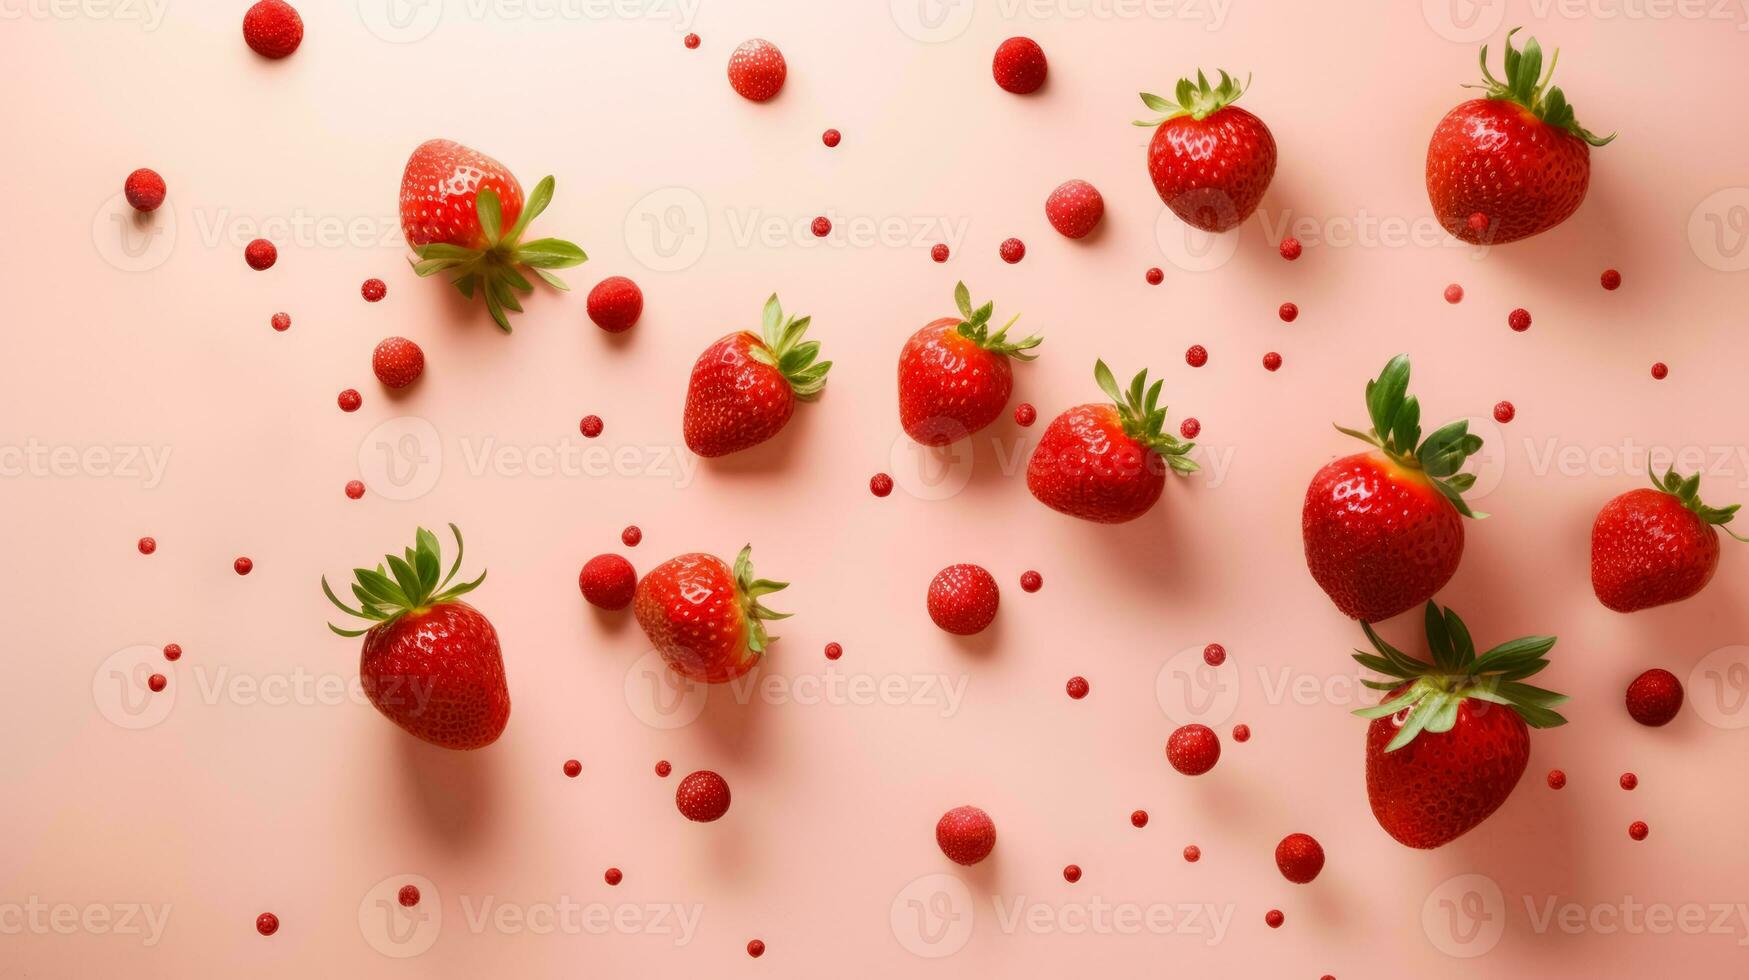 surreal Komposition mit Erdbeere im Minimalismus auf lebendig Hintergrund foto